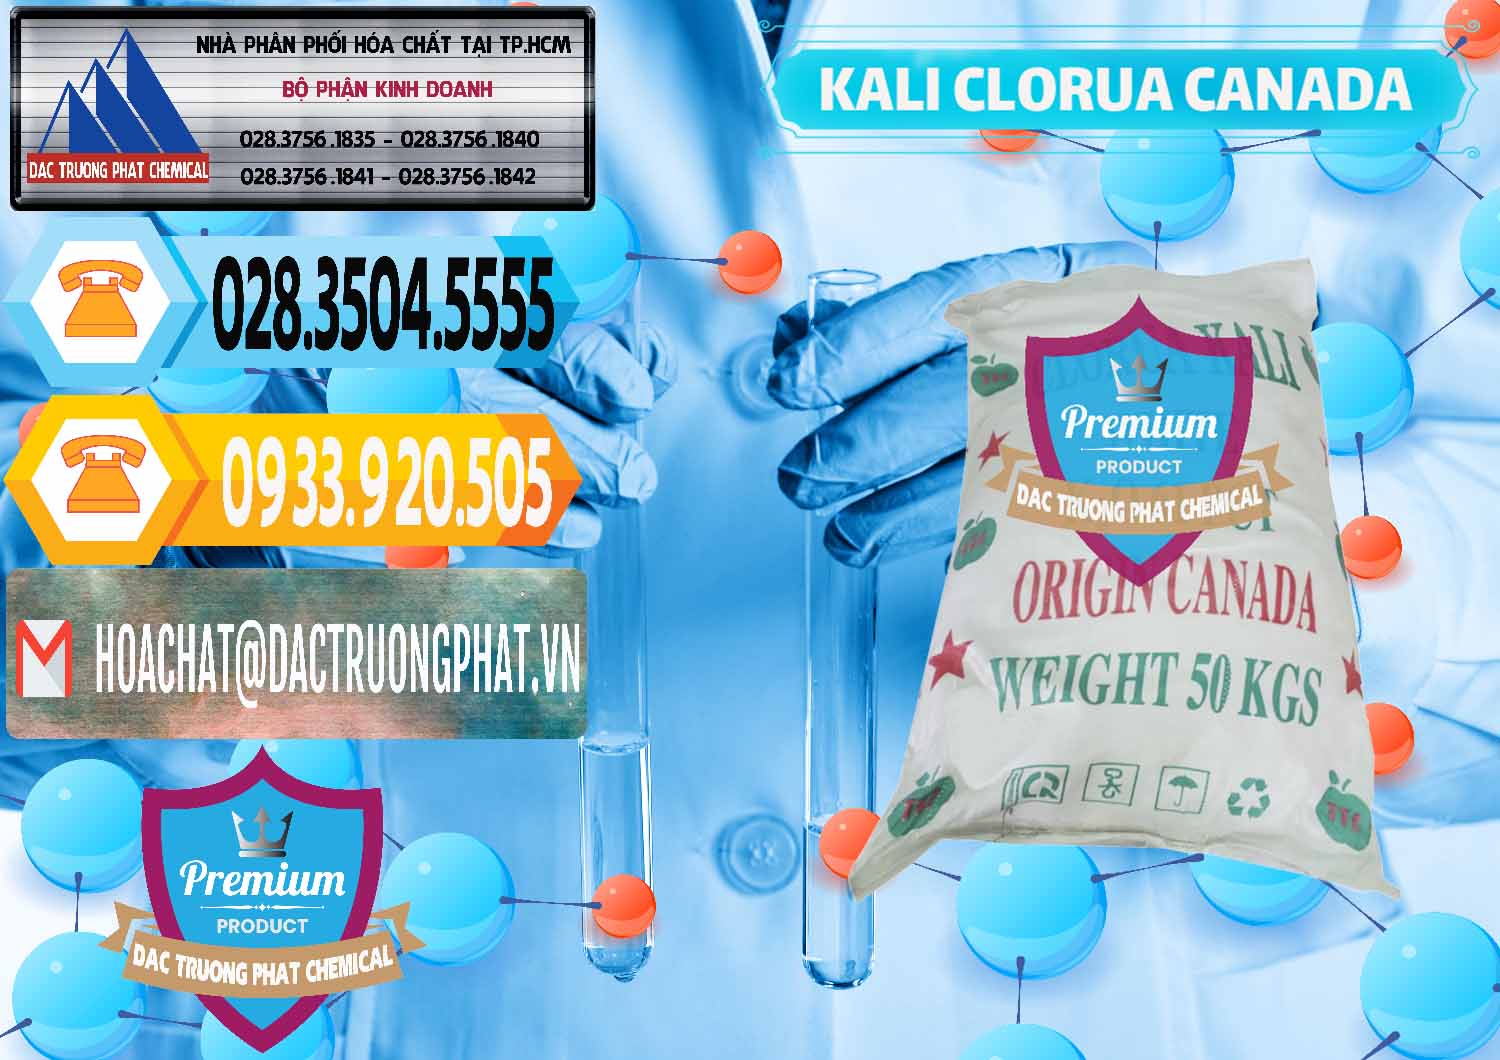 Cty bán - phân phối KCL – Kali Clorua Trắng Canada - 0437 - Công ty chuyên nhập khẩu _ cung cấp hóa chất tại TP.HCM - hoachattayrua.net